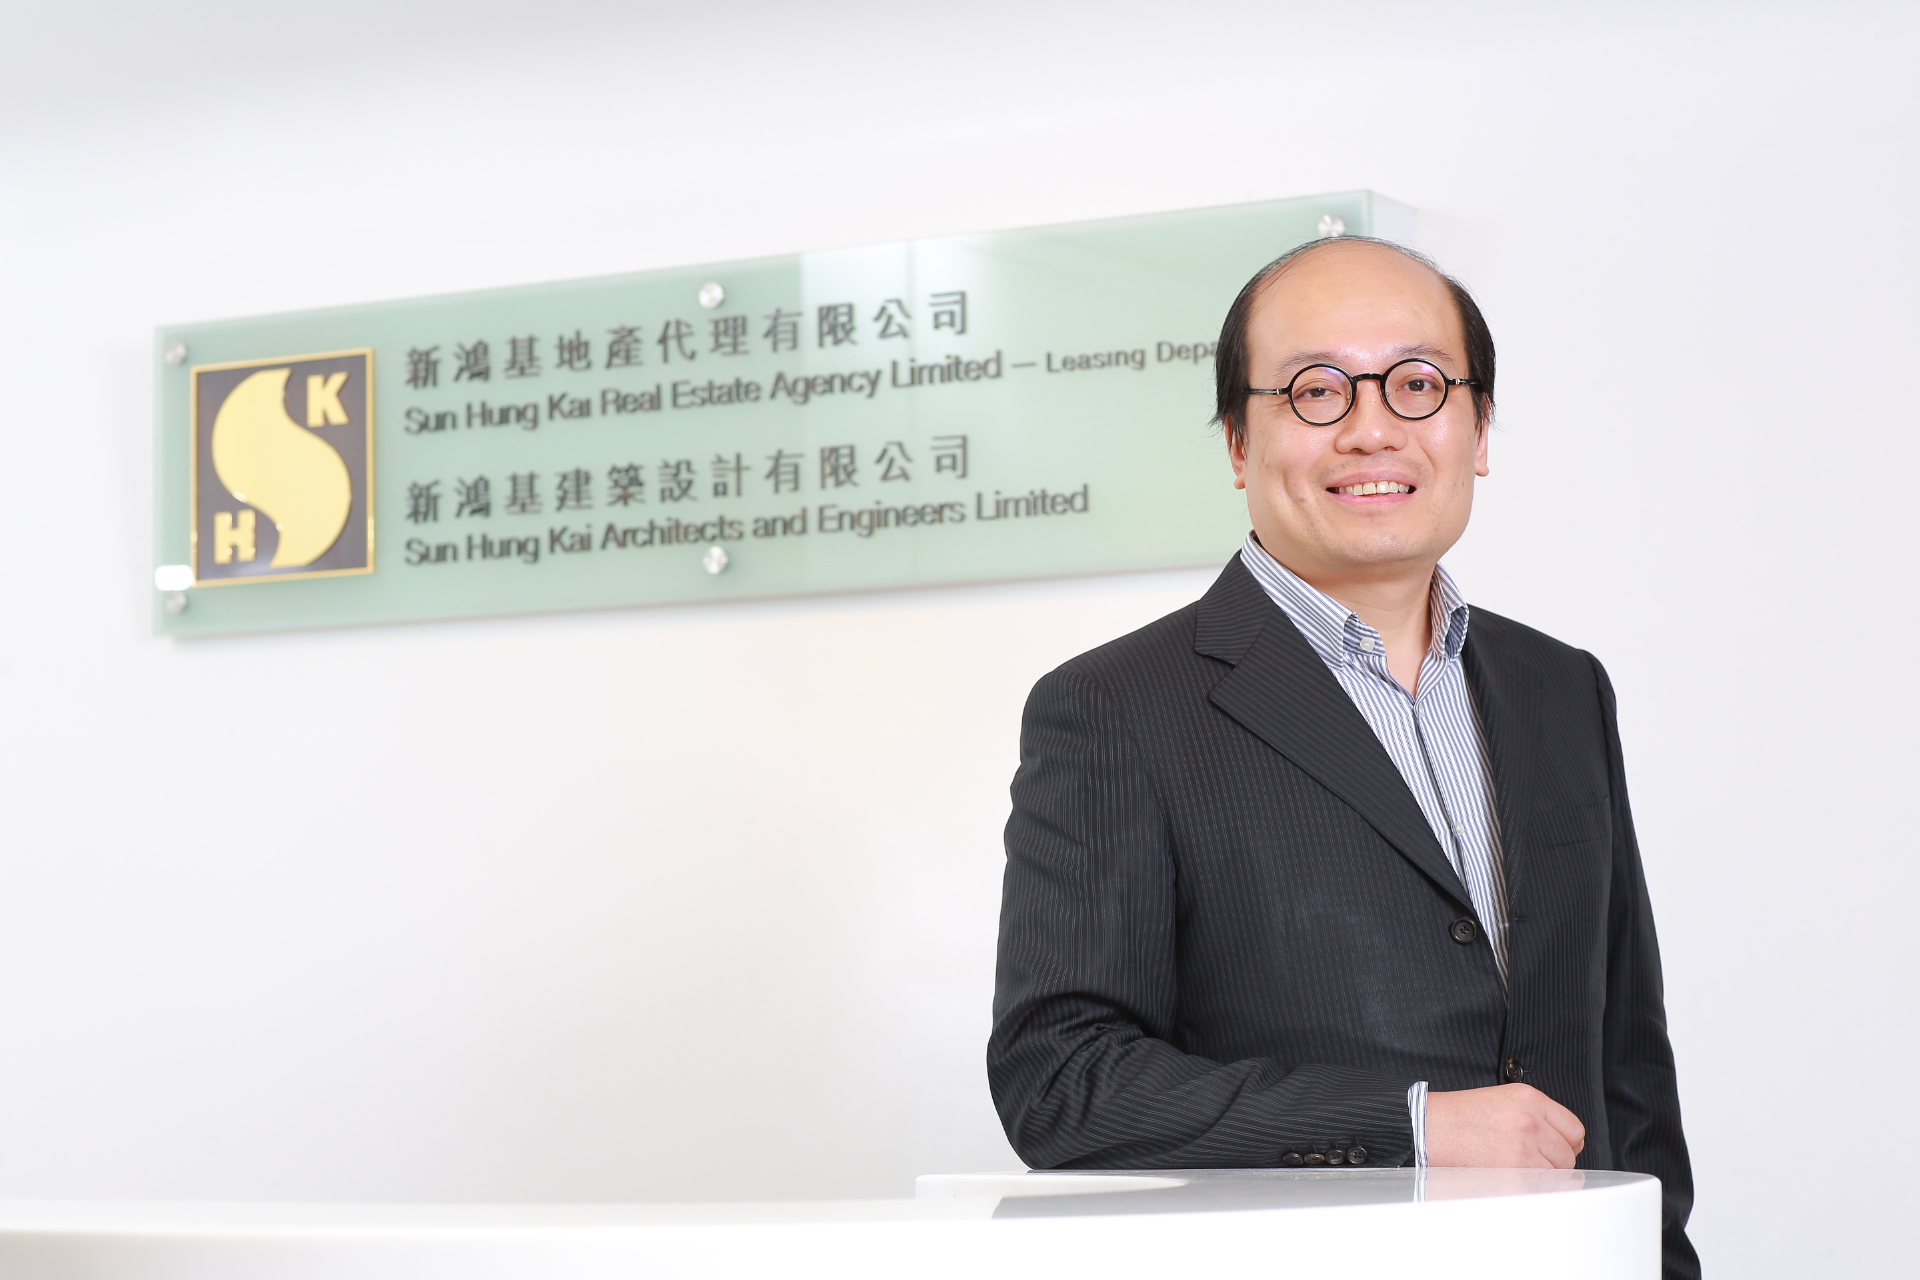 九龙站项目策划有限公司副策划总监邓伟文形容，集团拥有丰富的综合大型项目建筑及管理经验。